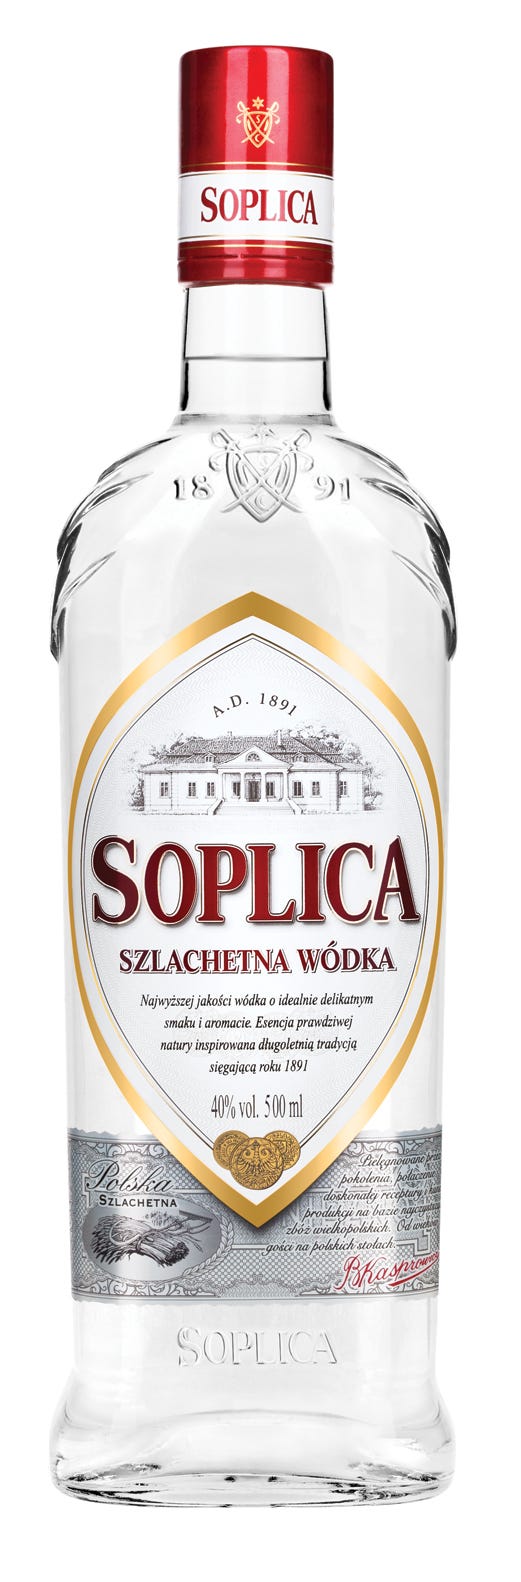 297679-Soplica_Szlachetna_Wodka_bottle.jpg